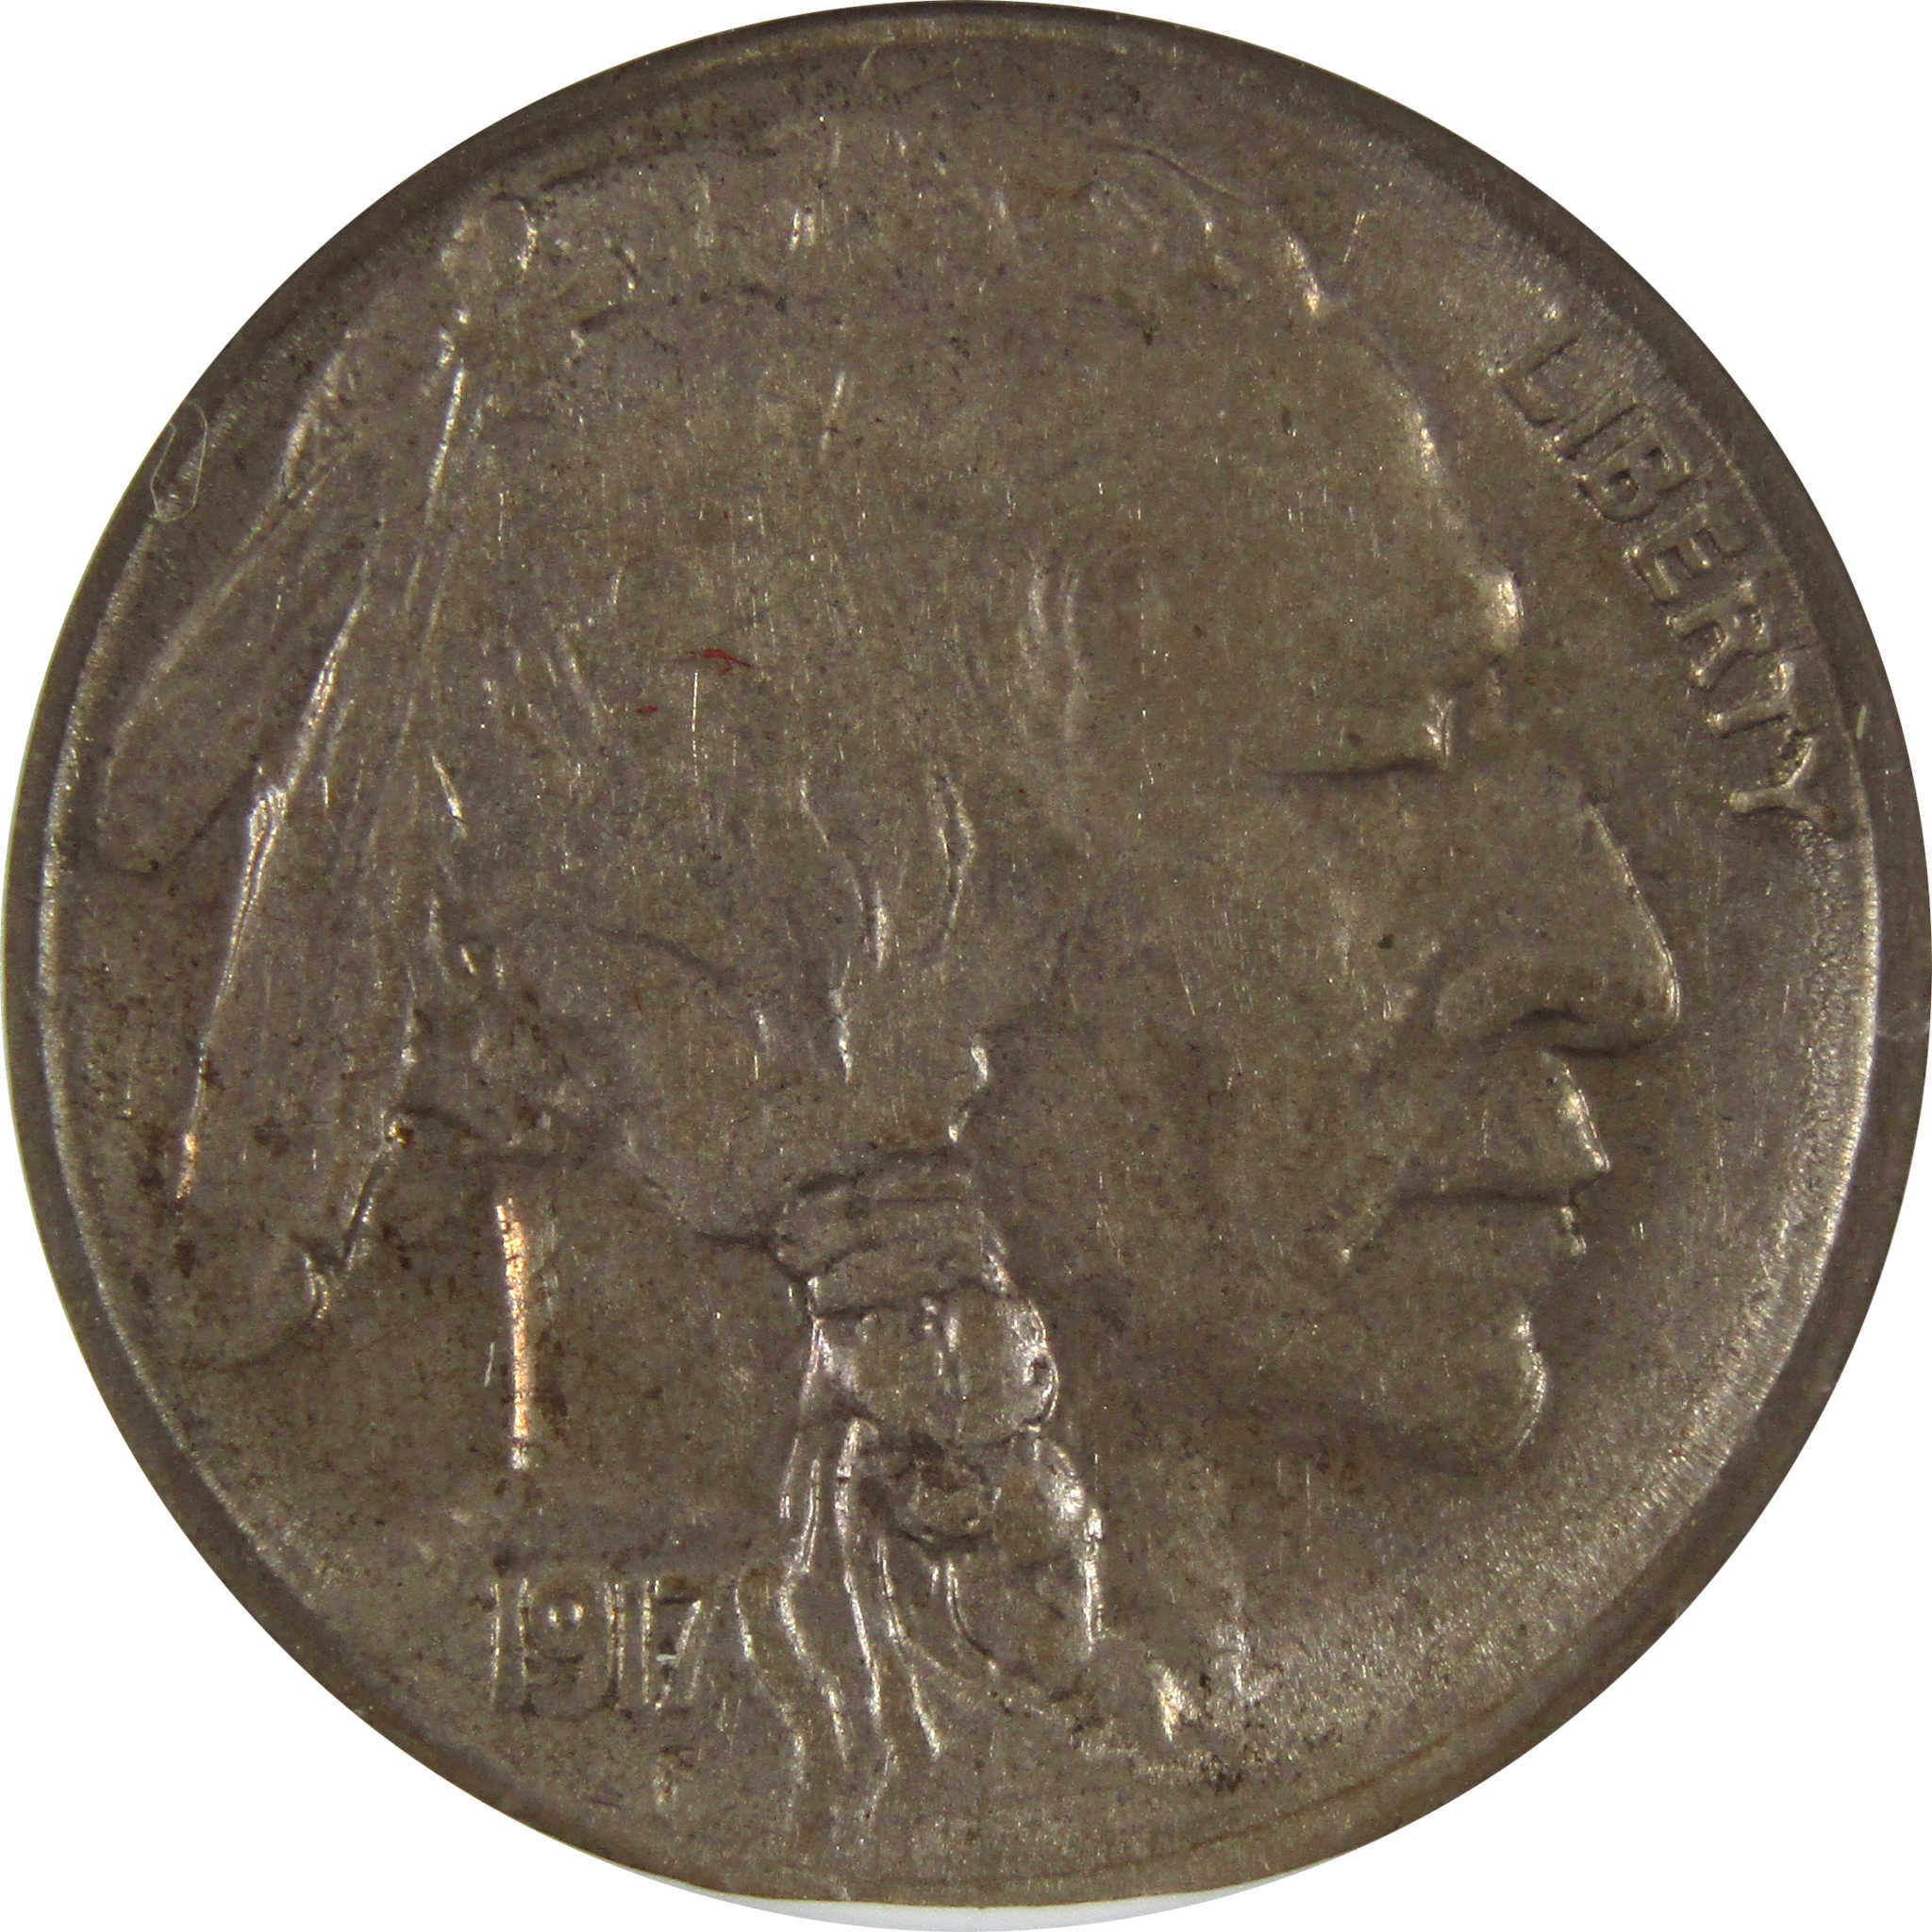 1917 S Indian Head Buffalo Nickel AU 53 ANACS 5c Coin SKU:I8688